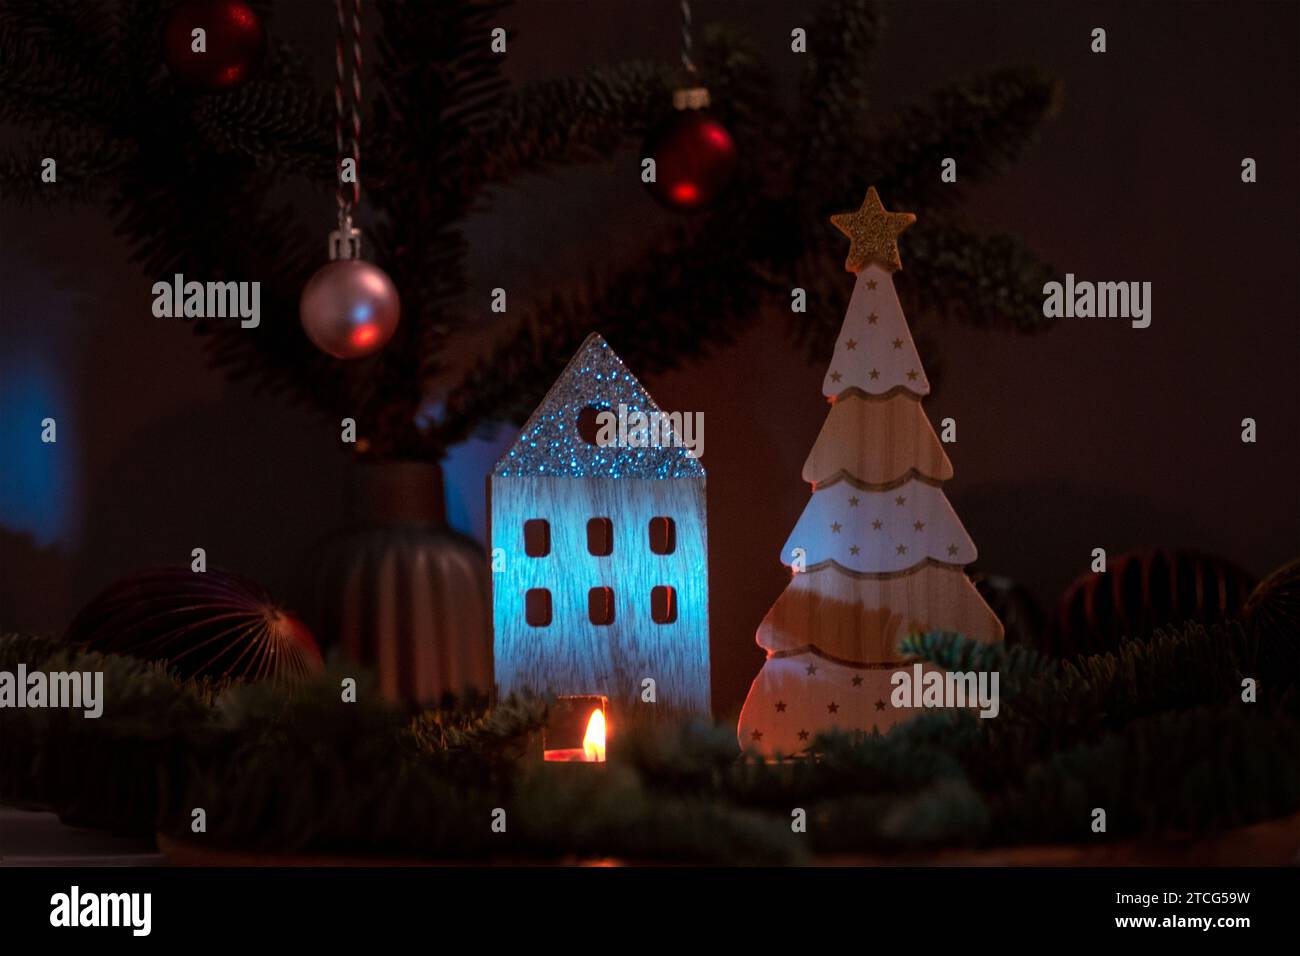 Candele in fiamme e decorazioni natalizie in legno con rami di abete su sfondo scuro. Biglietto d'auguri per Natale o Capodanno. Foto Stock